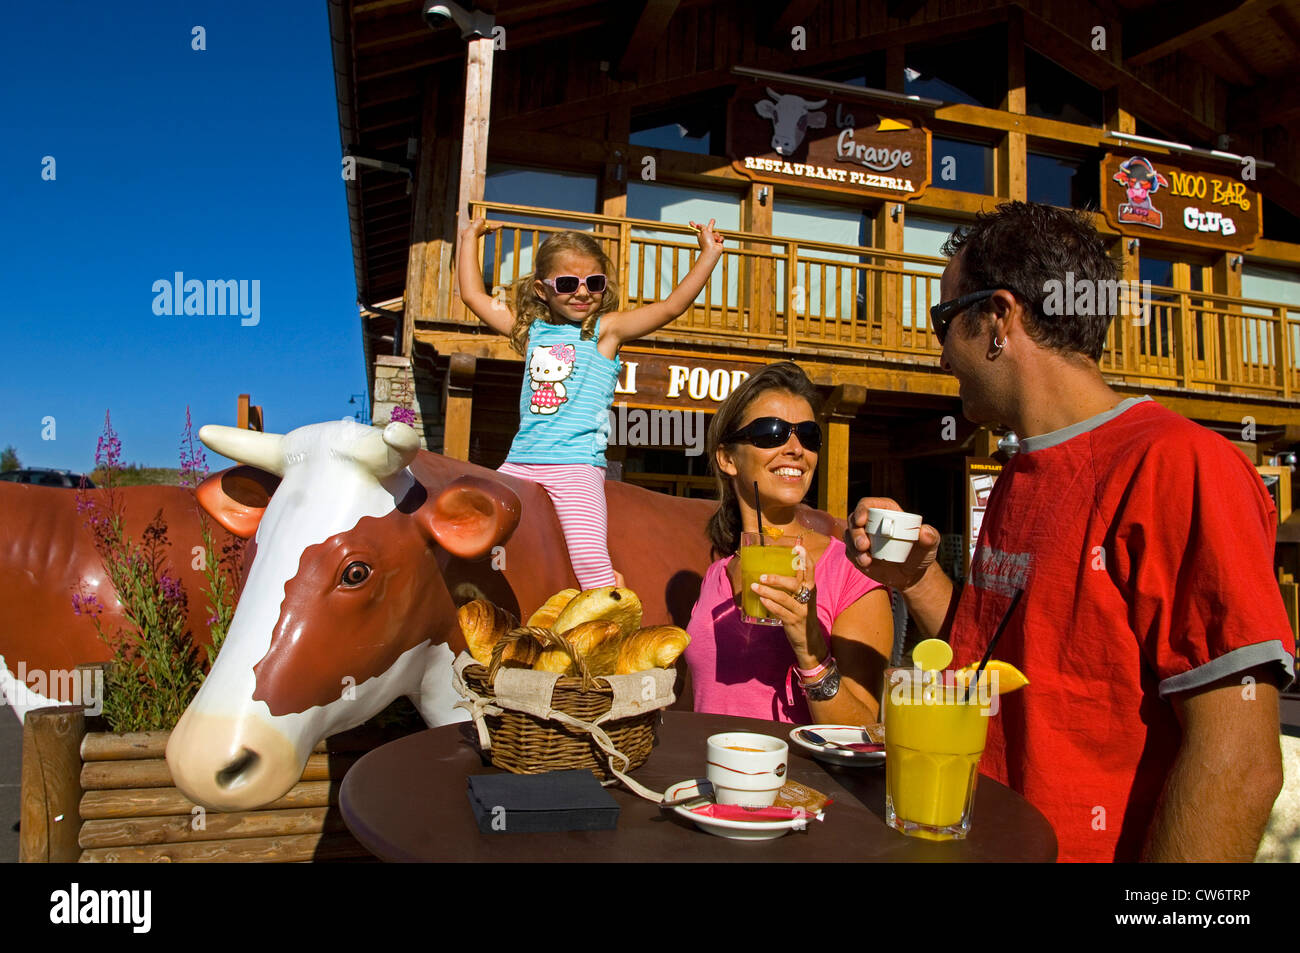 Jeune famille en face de mountain resort hotel, les parents assis à une table de café, jeune fille sur une vache en plastique, France, Savoie, Alpes Banque D'Images